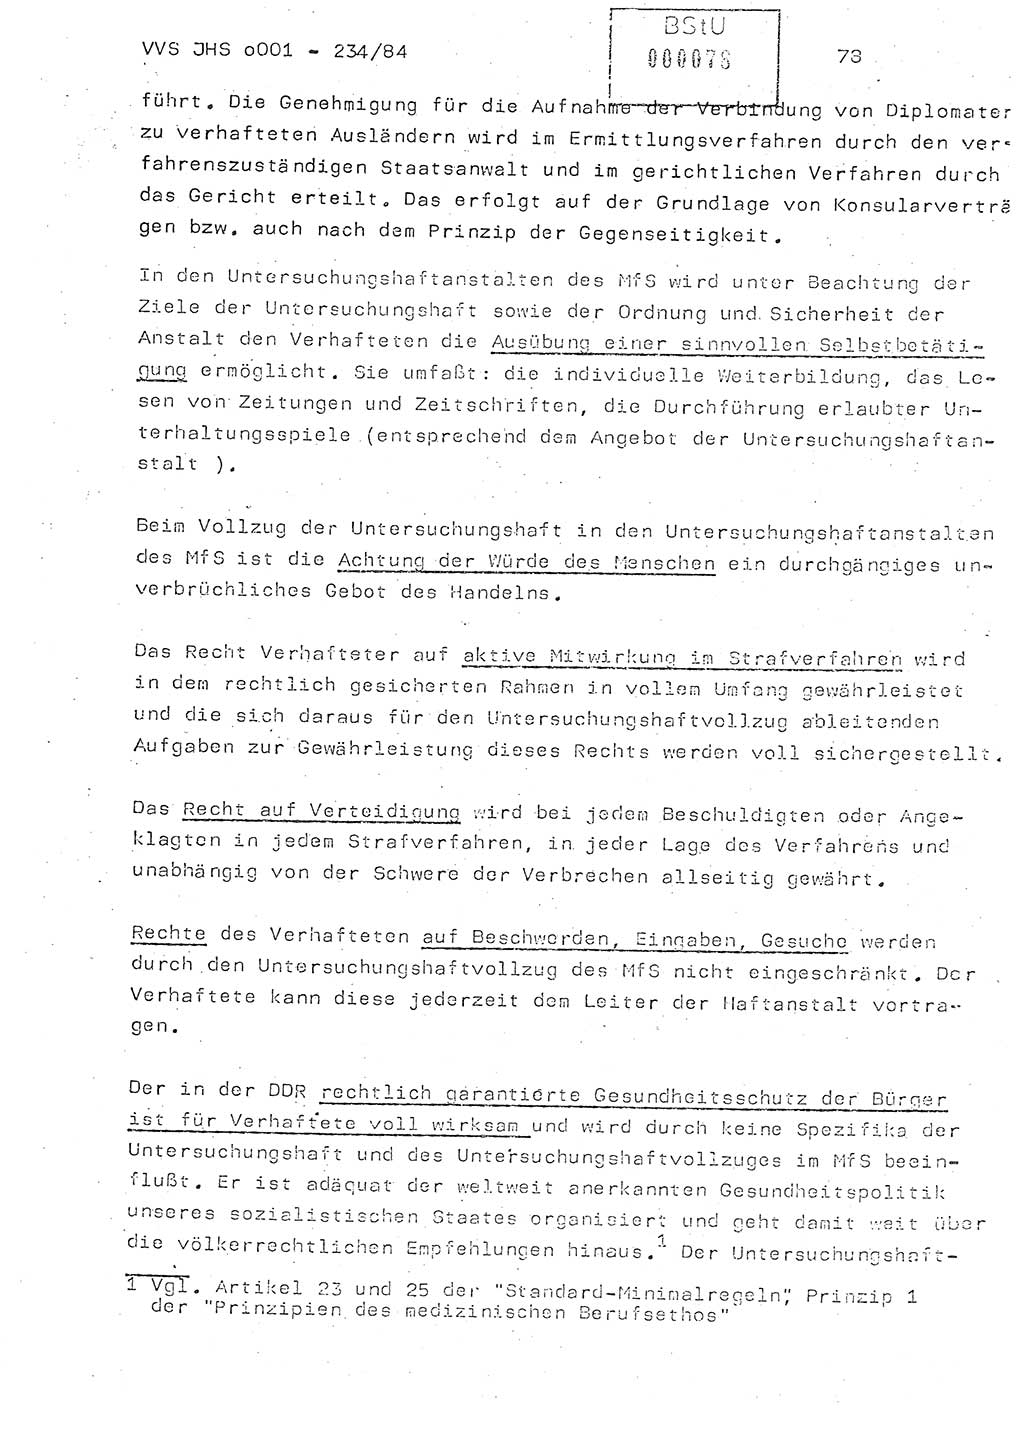 Dissertation Oberst Siegfried Rataizick (Abt. ⅩⅣ), Oberstleutnant Volkmar Heinz (Abt. ⅩⅣ), Oberstleutnant Werner Stein (HA Ⅸ), Hauptmann Heinz Conrad (JHS), Ministerium für Staatssicherheit (MfS) [Deutsche Demokratische Republik (DDR)], Juristische Hochschule (JHS), Vertrauliche Verschlußsache (VVS) o001-234/84, Potsdam 1984, Seite 78 (Diss. MfS DDR JHS VVS o001-234/84 1984, S. 78)